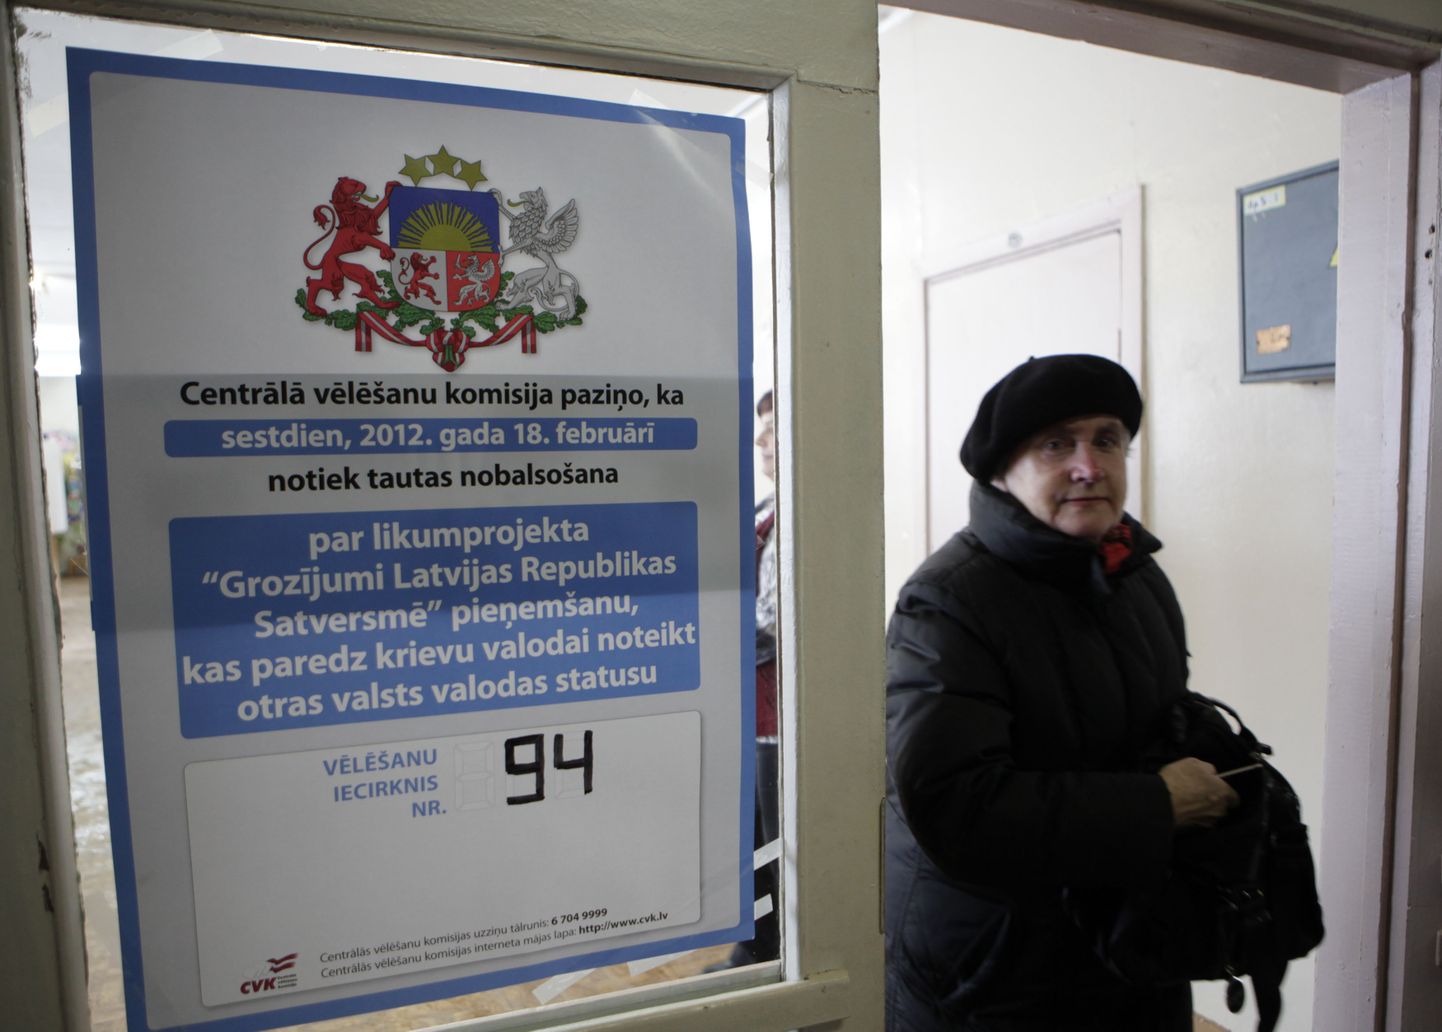 Keelereferendumil osalenud Läti kodanik väljumas valimisjaoskonnast.